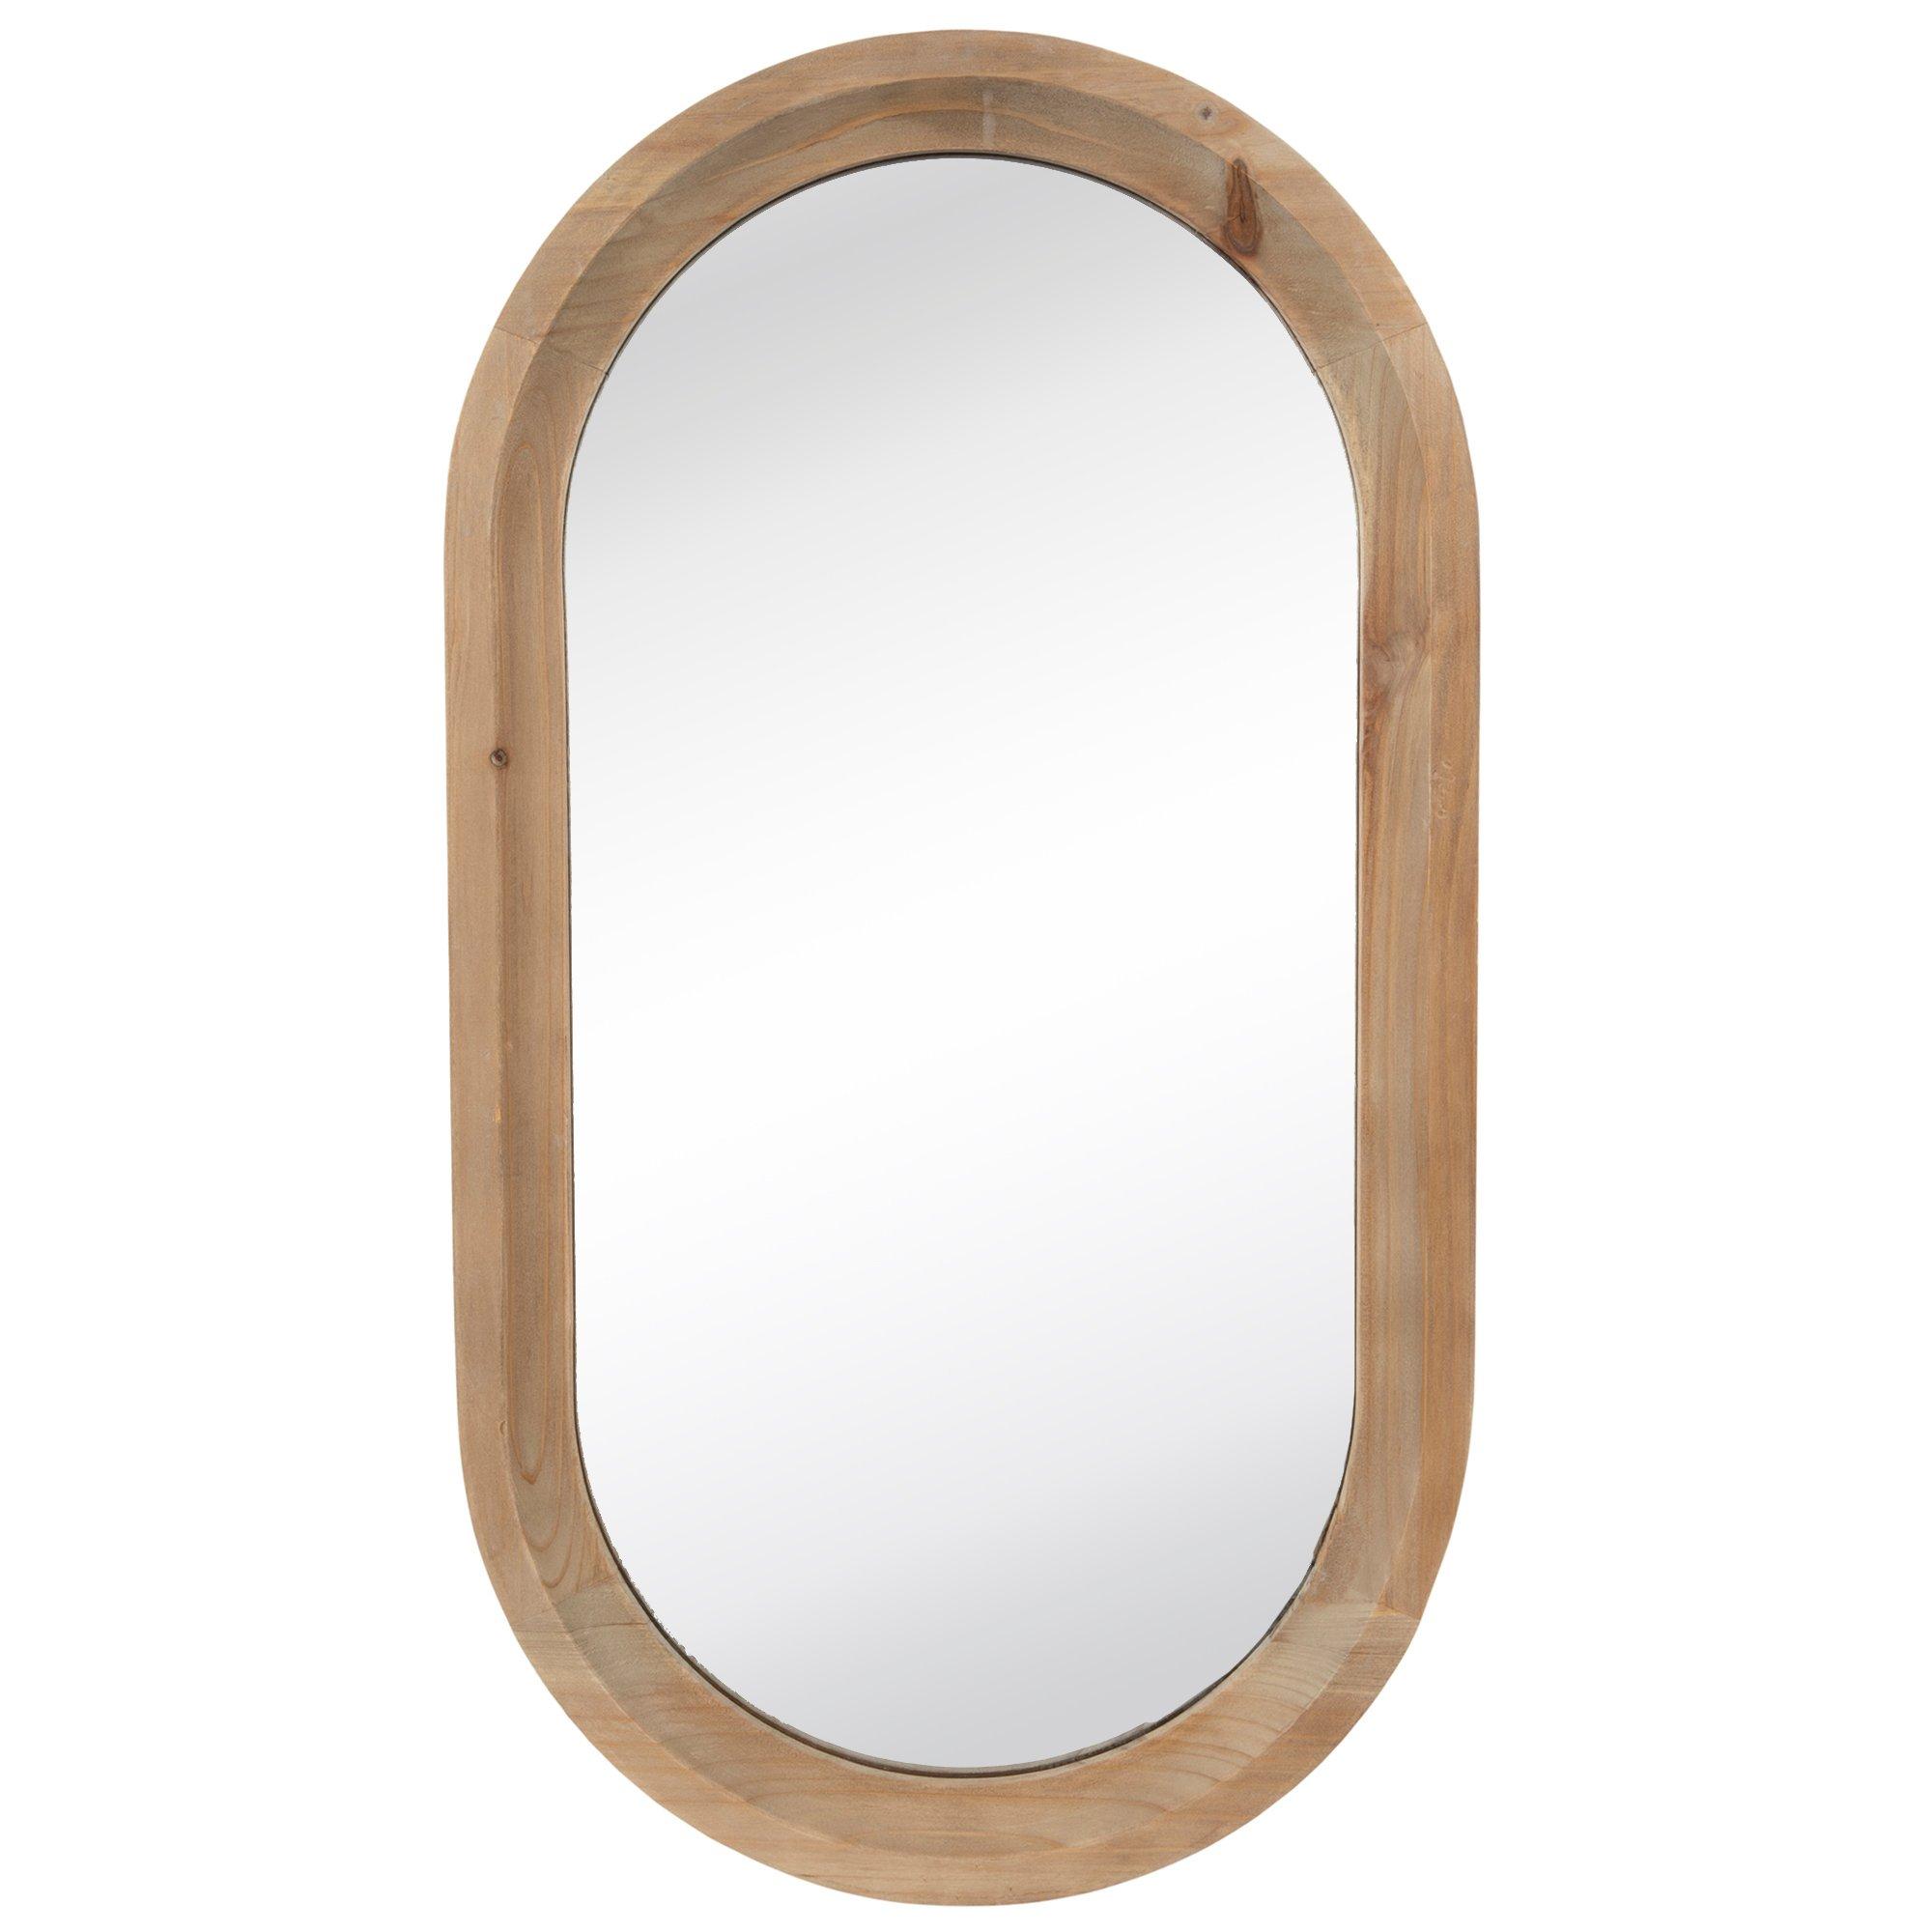 Oval Wood Wall Mirror